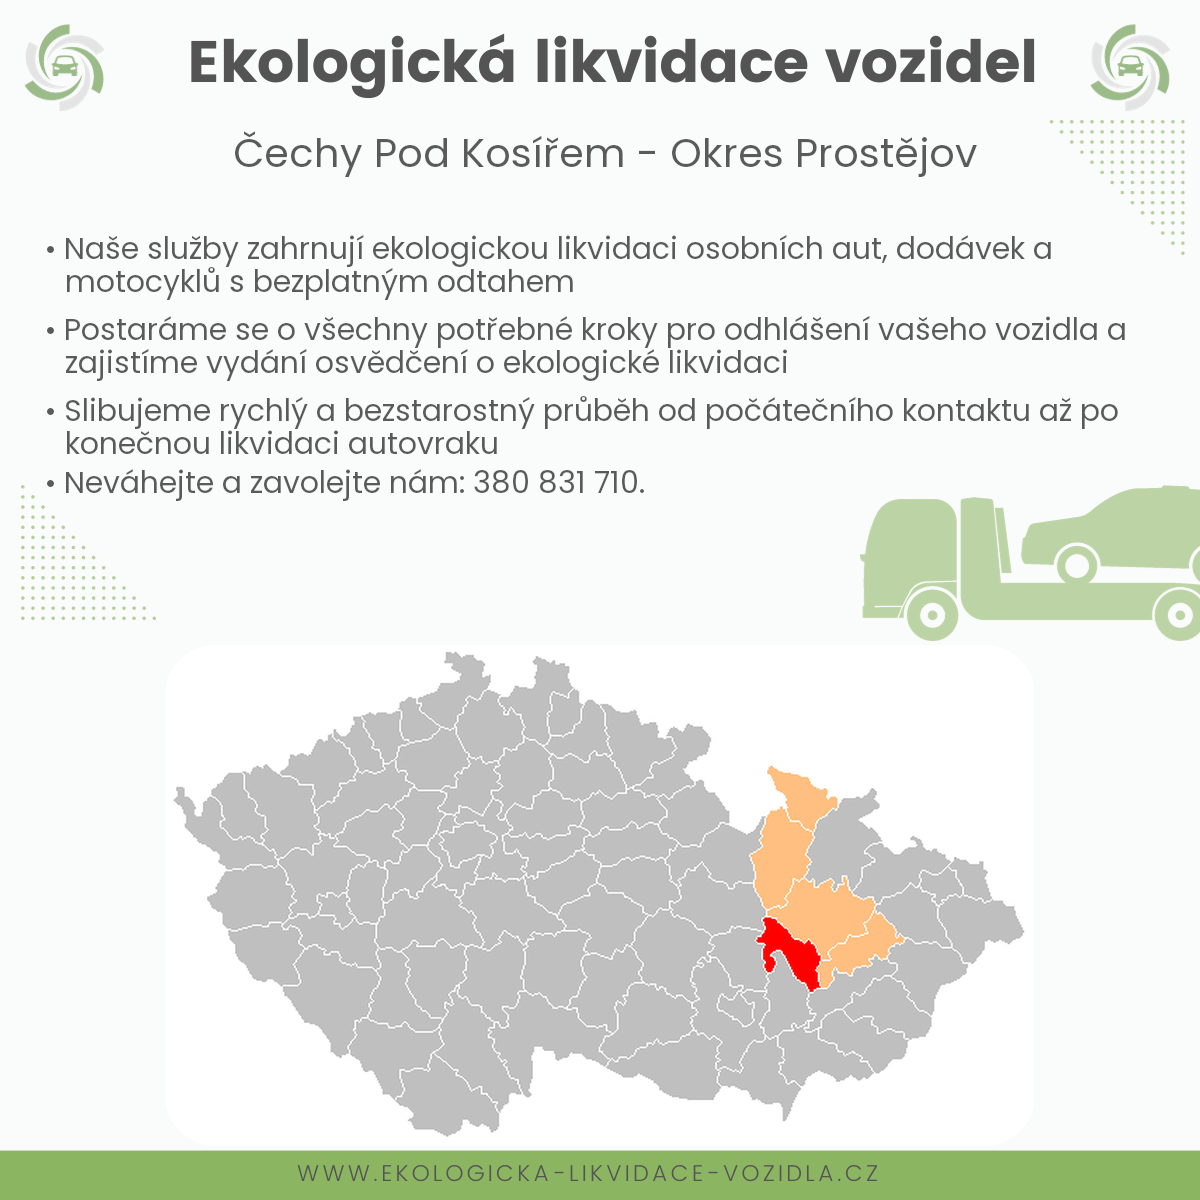 likvidace vozidel - Čechy pod Kosířem